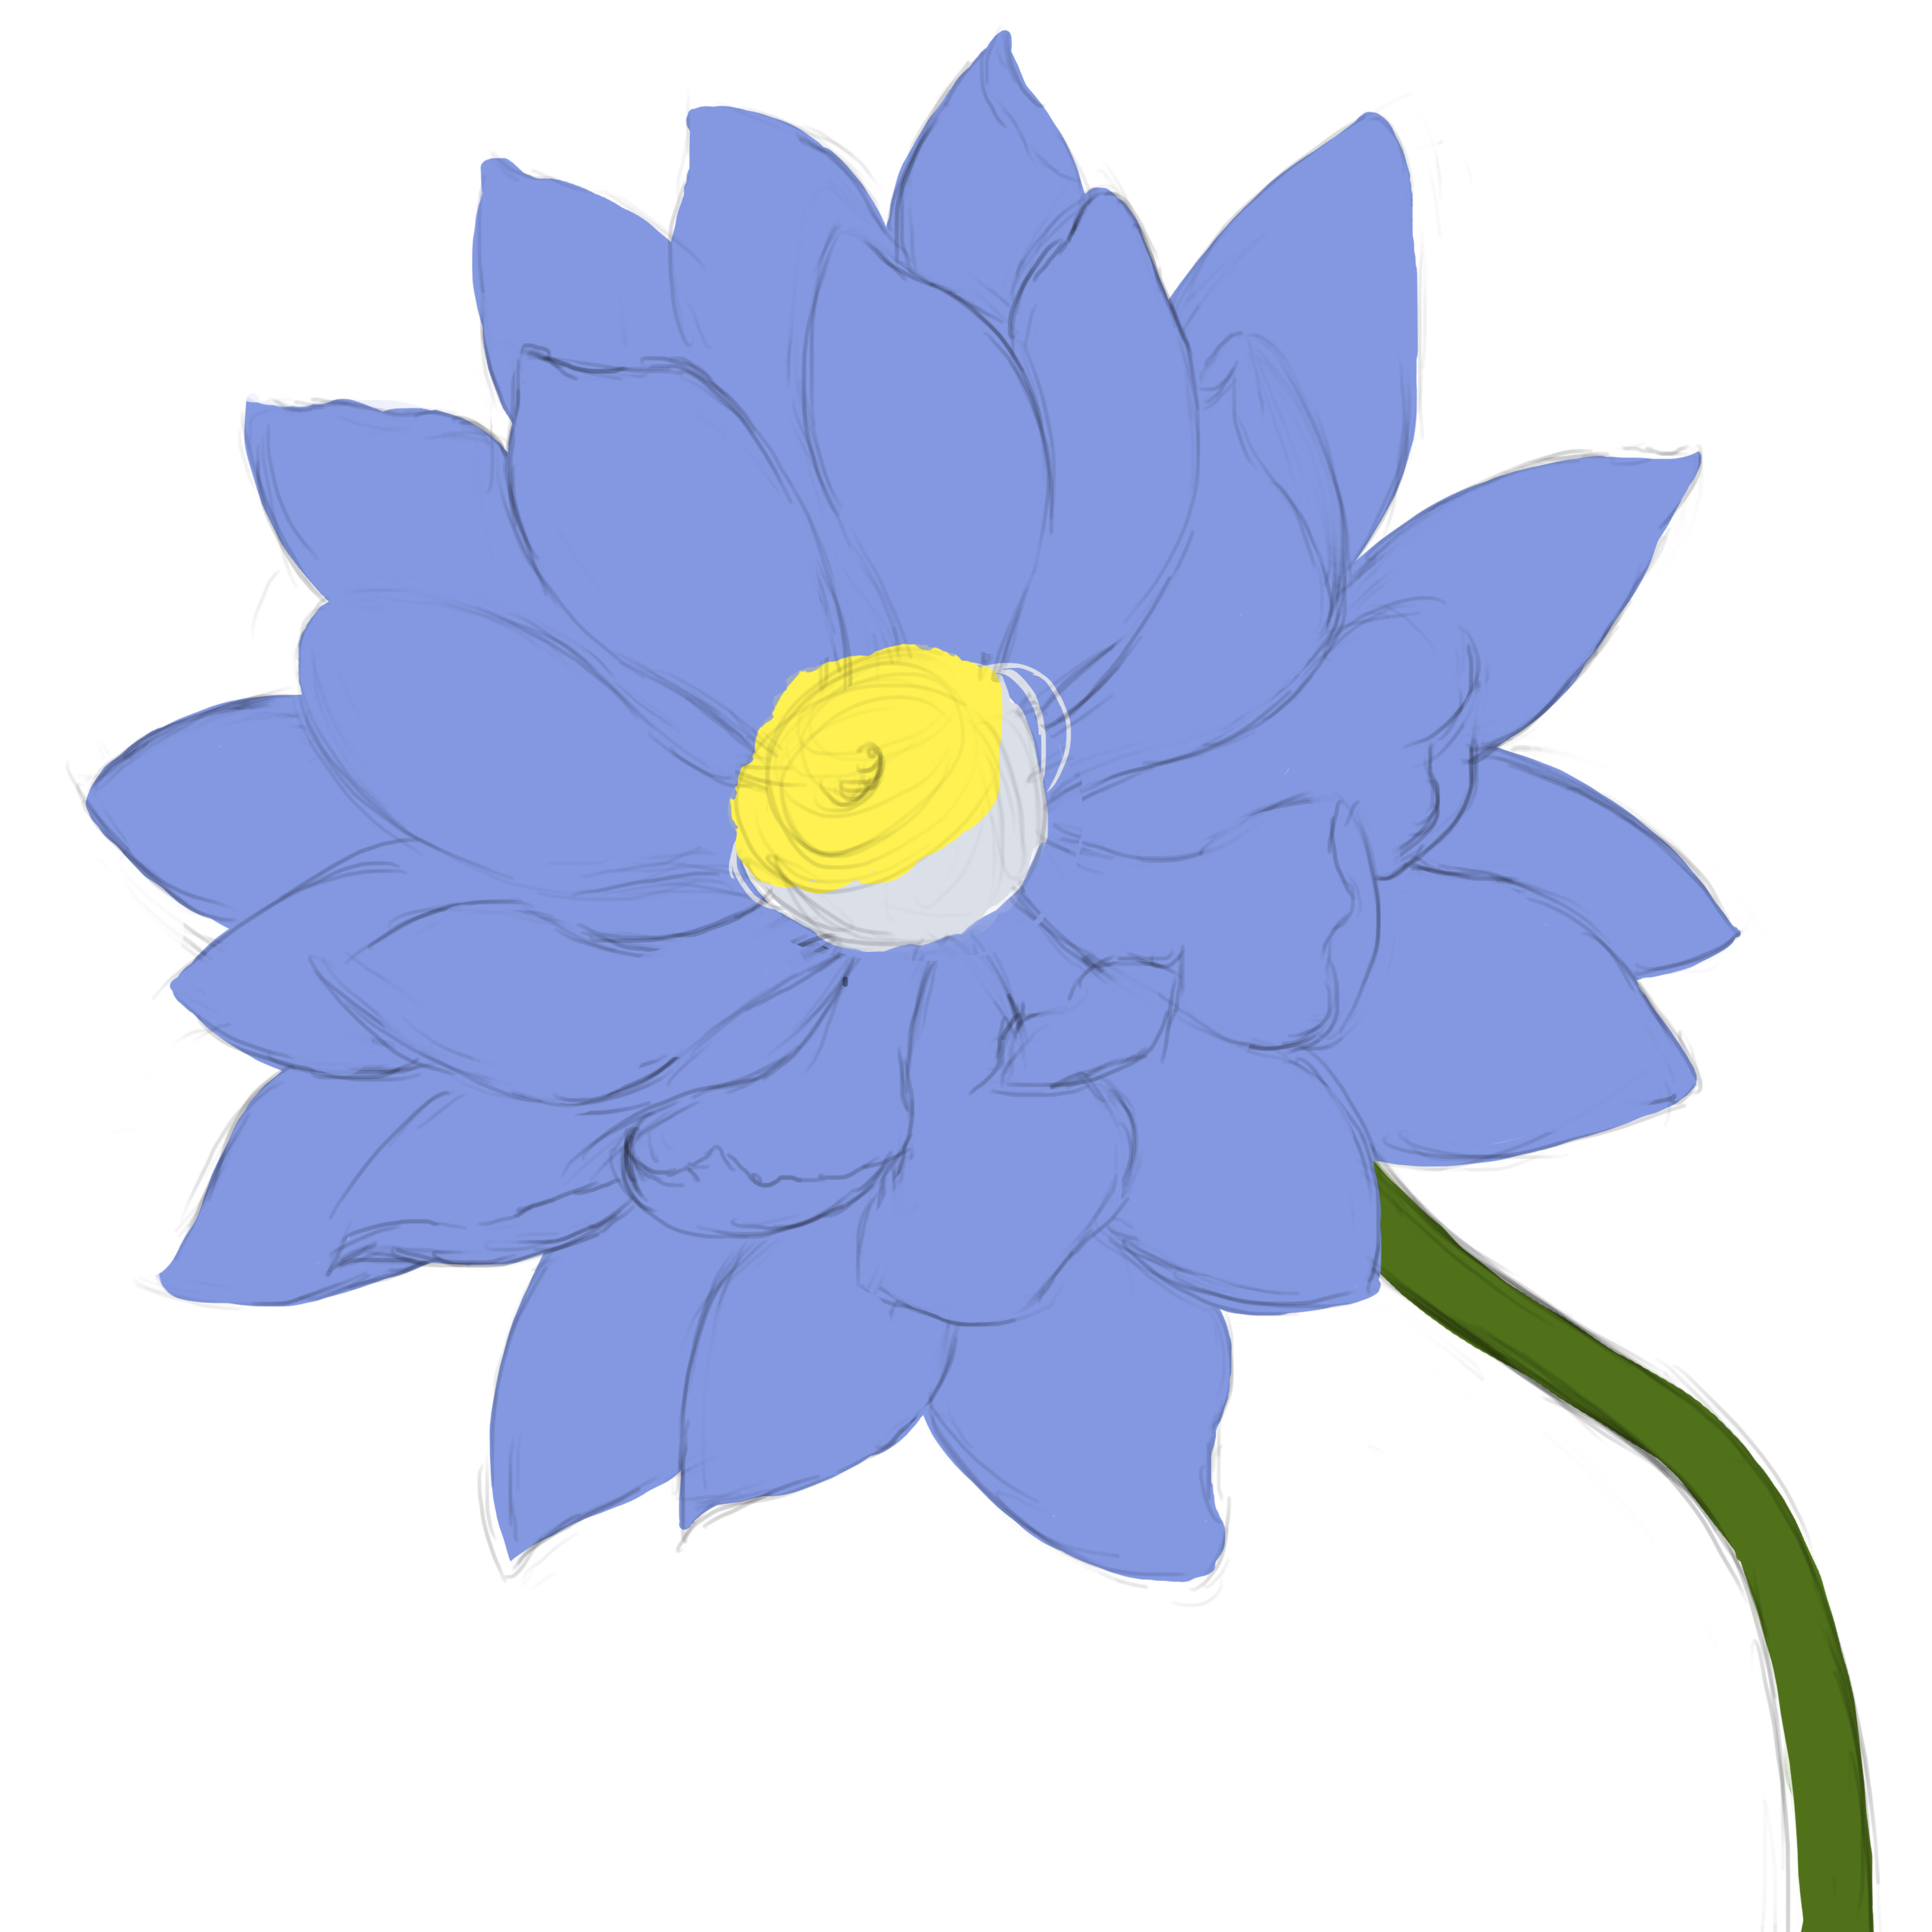 30 多张免费的“睡莲蓝”和“花”照片 - Pixabay